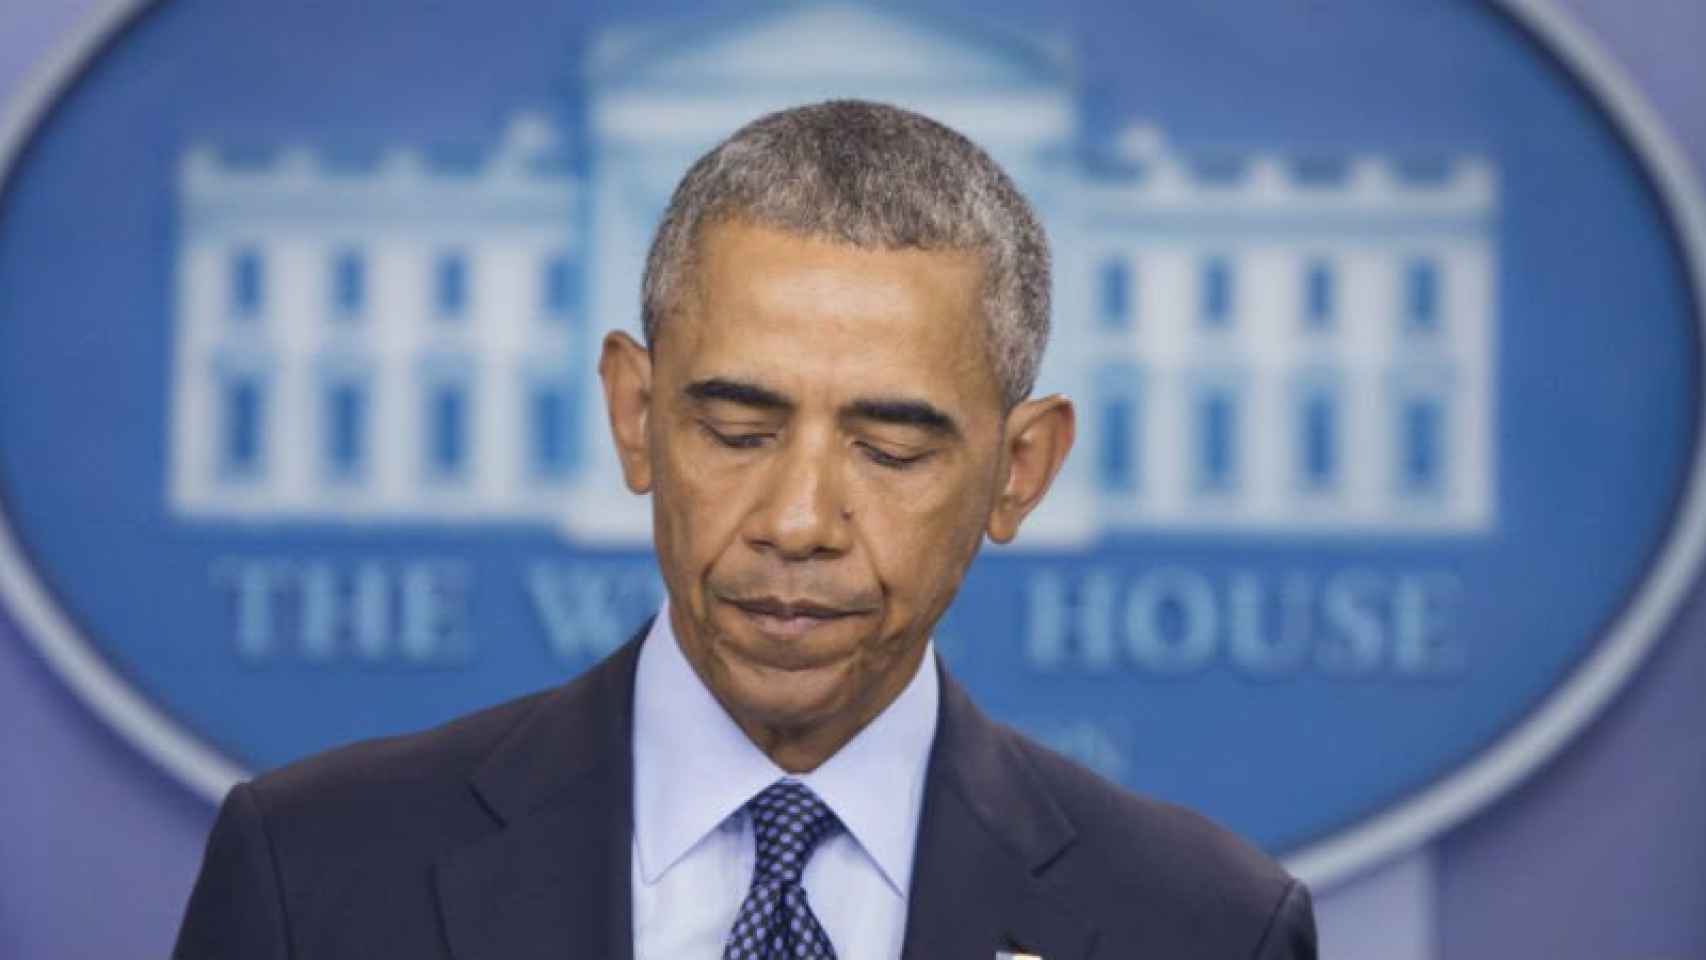 El expresidente de Estados Unidos, Barack Obama, ganó el Nobel de la Paz en 2009